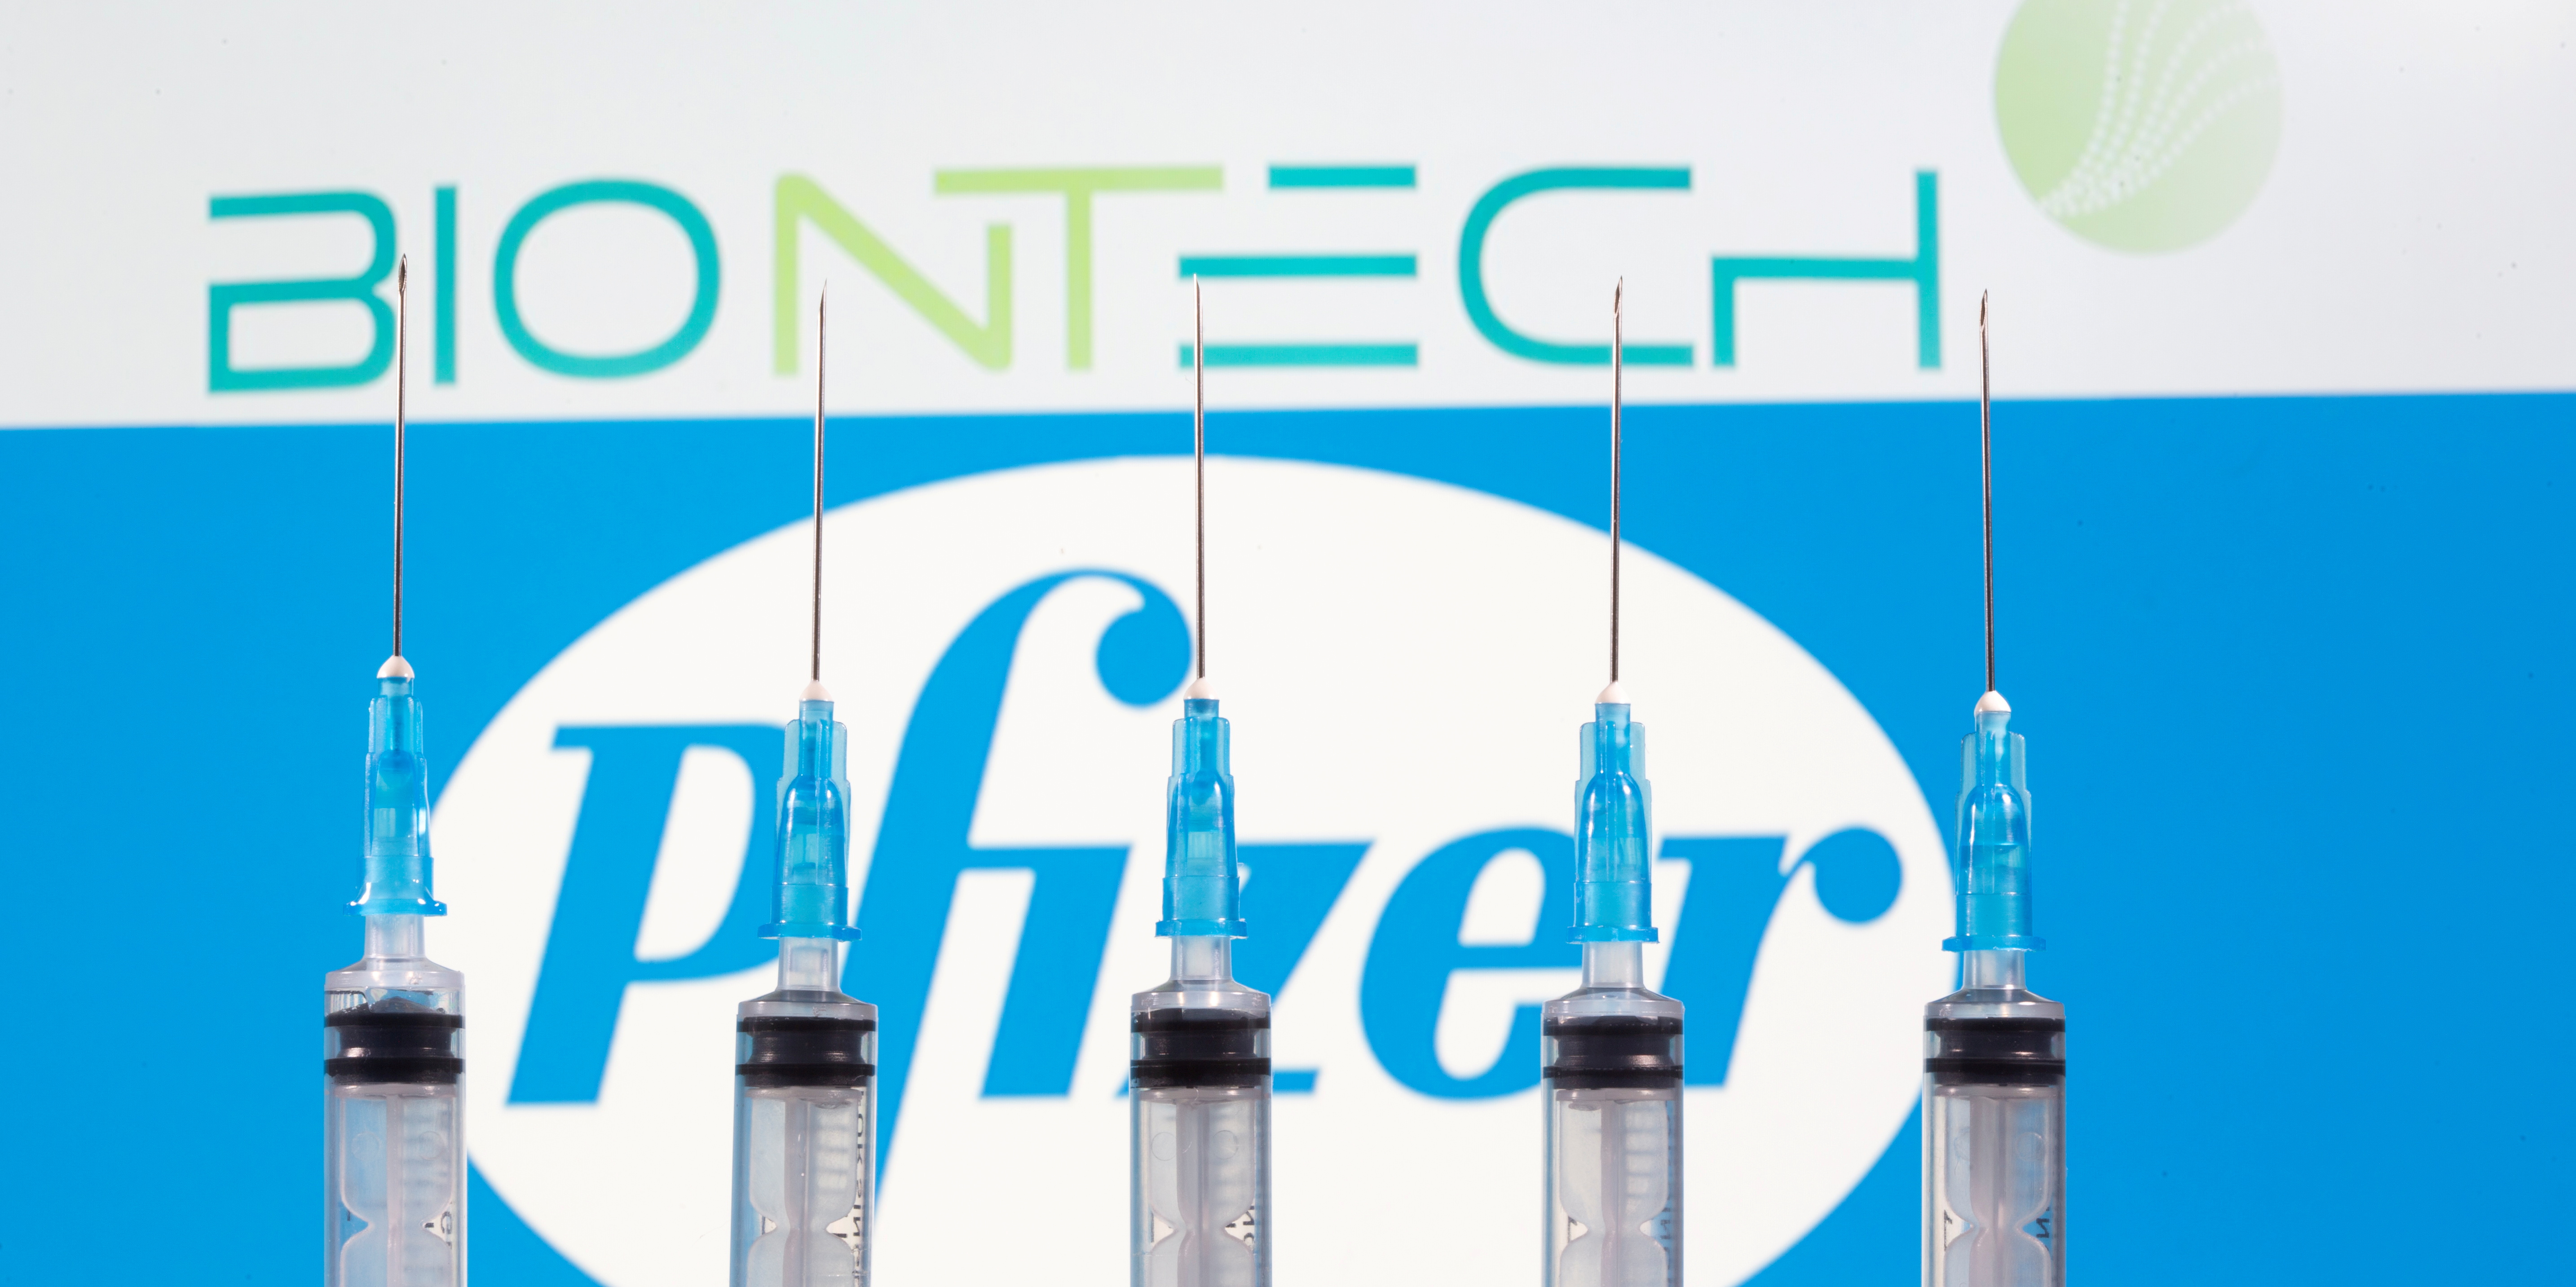 Covid-19: l'alliance Pfizer/BioNTech annonce un vaccin efficace à 95% et s'engage vers la commercialisation